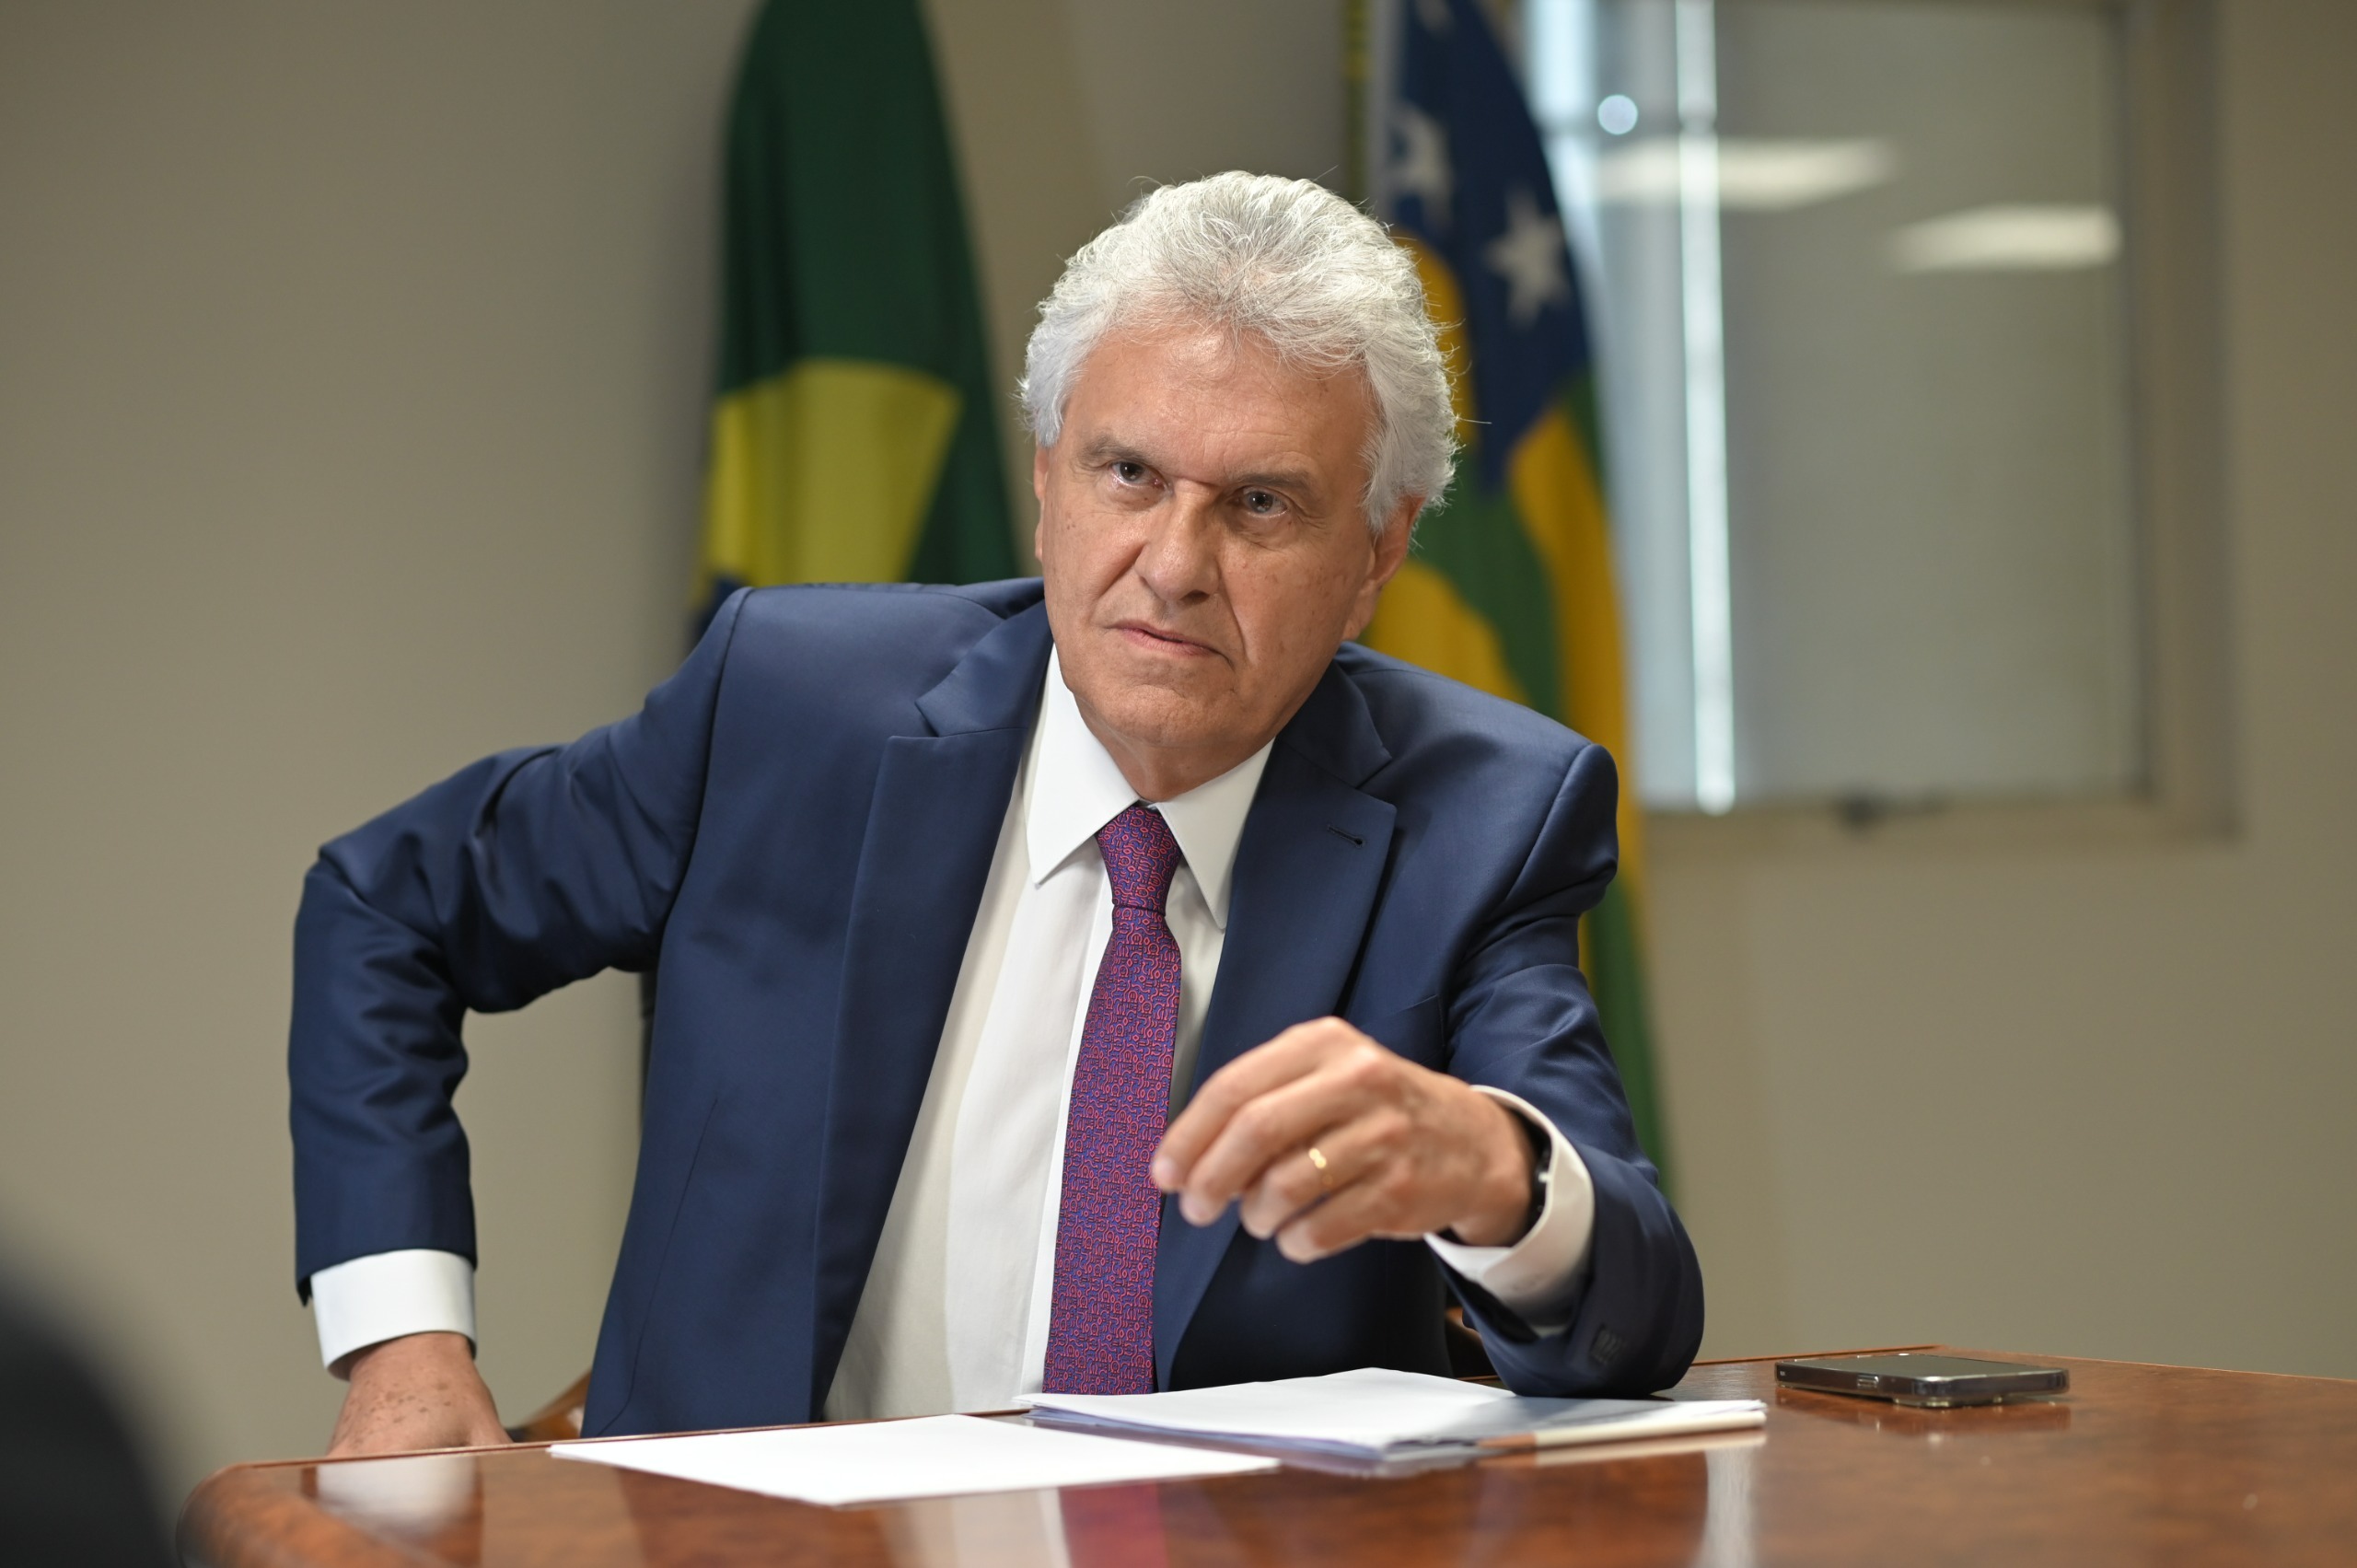 Aprovação do governador Ronaldo Caiado sobe para 81,9% entre os goianienses, revela Paraná Pesquisas